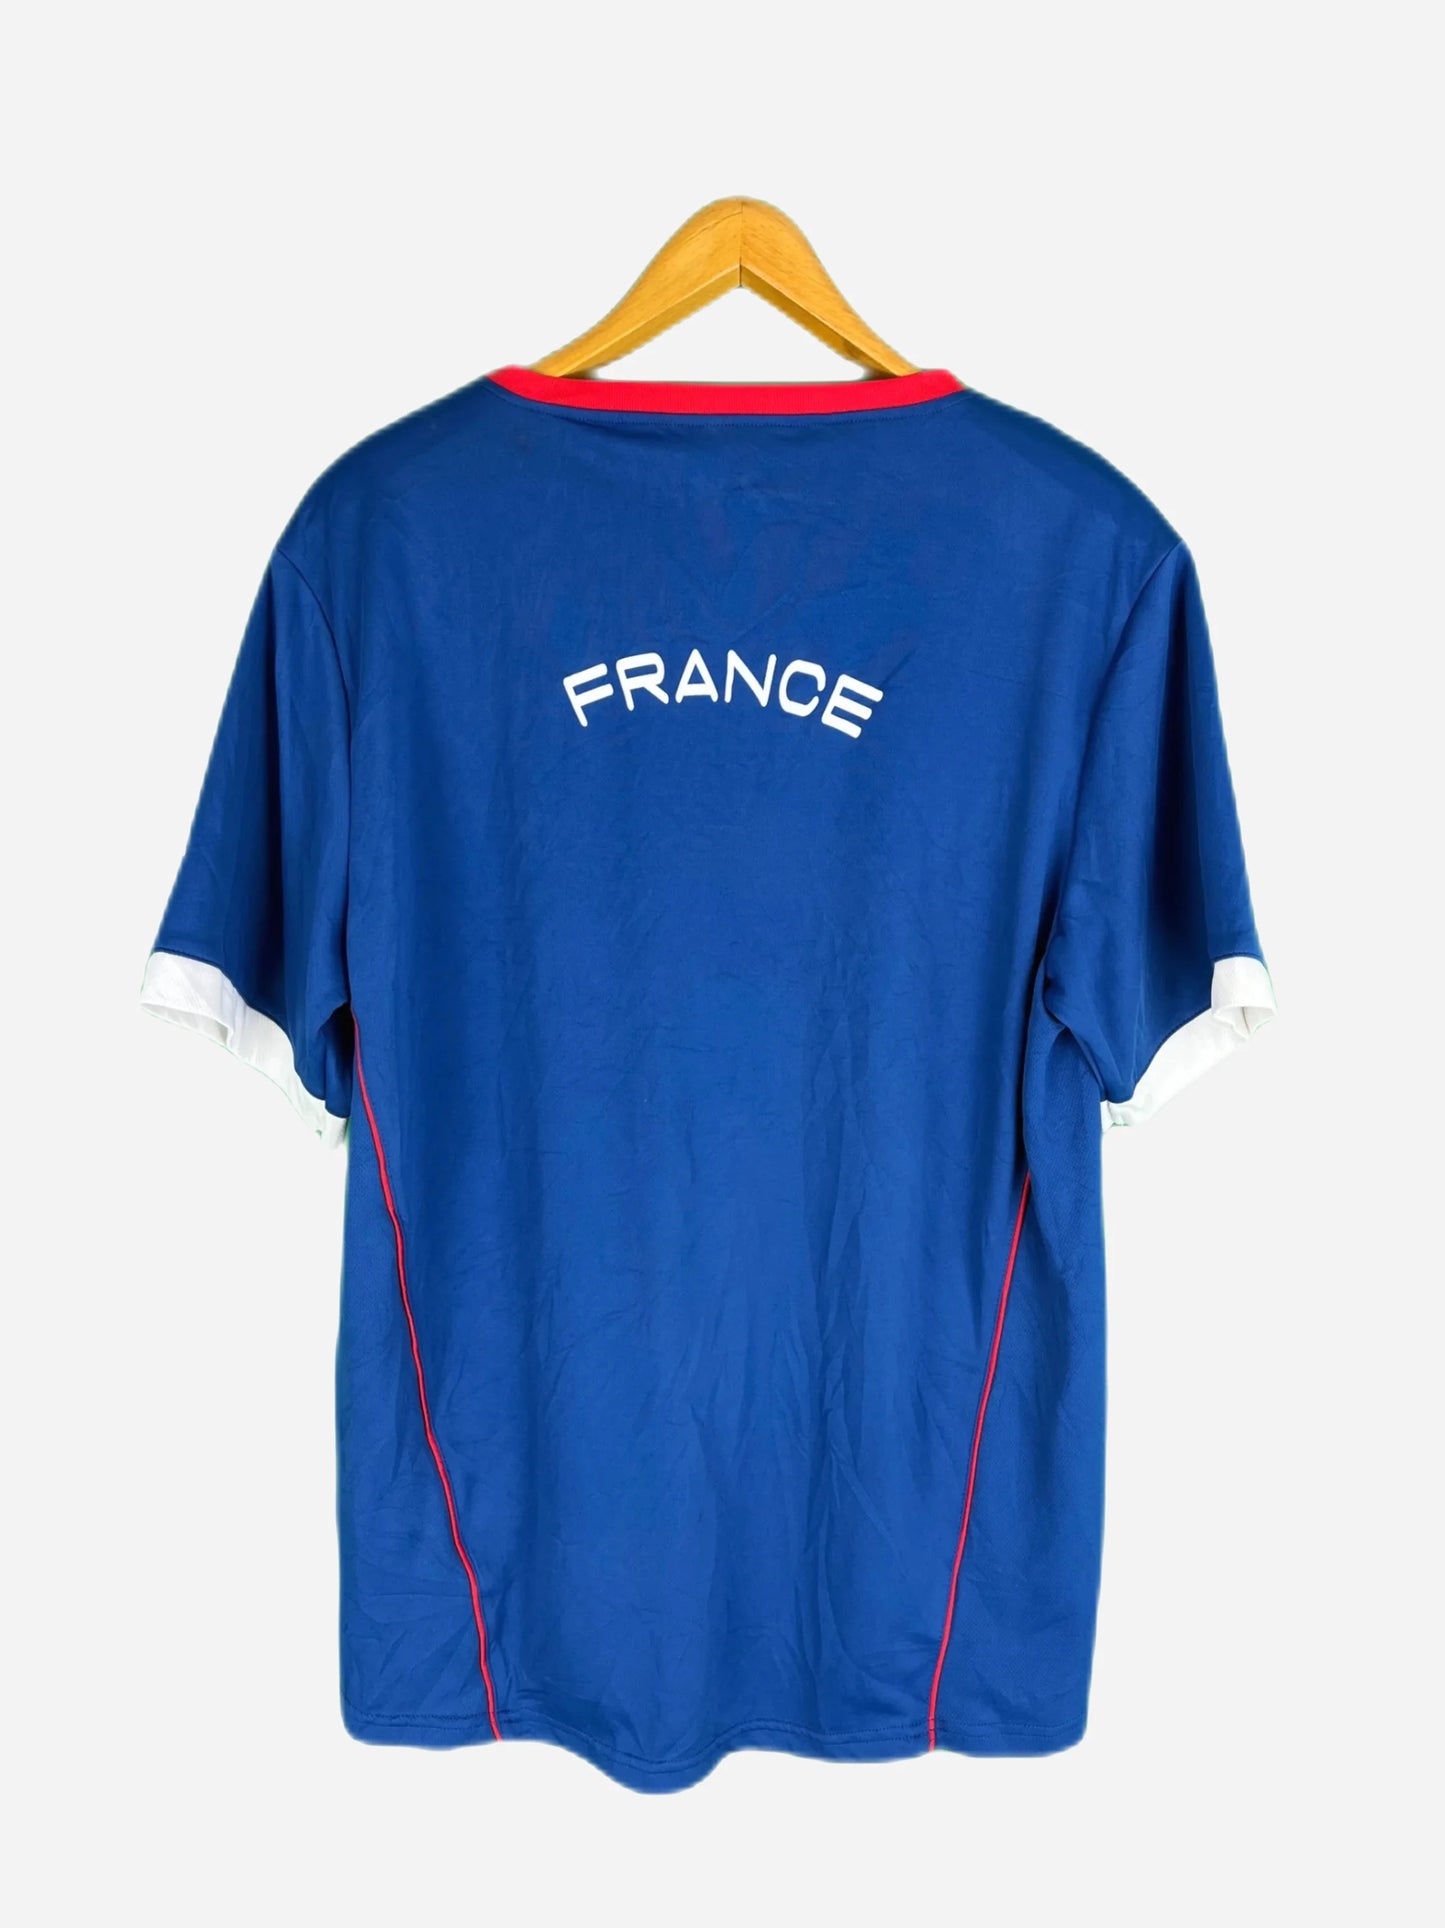 Vintage Trikot Frankreich (L)